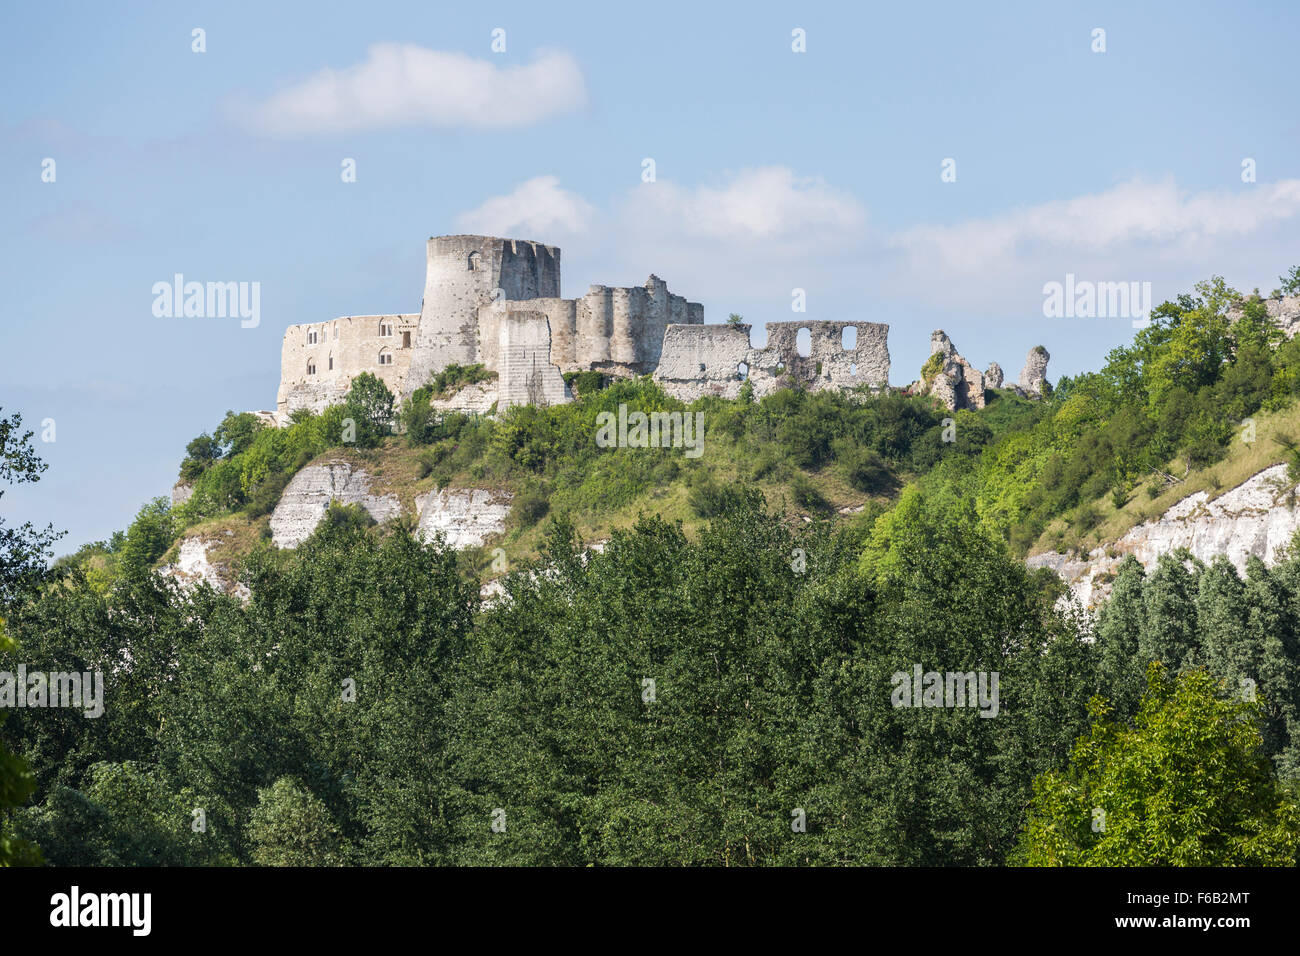 Château Gaillard, les ruines d'un château médiéval construit par le roi Richard I, Les Andelys, une petite ville de Normandie, du nord de la France Banque D'Images